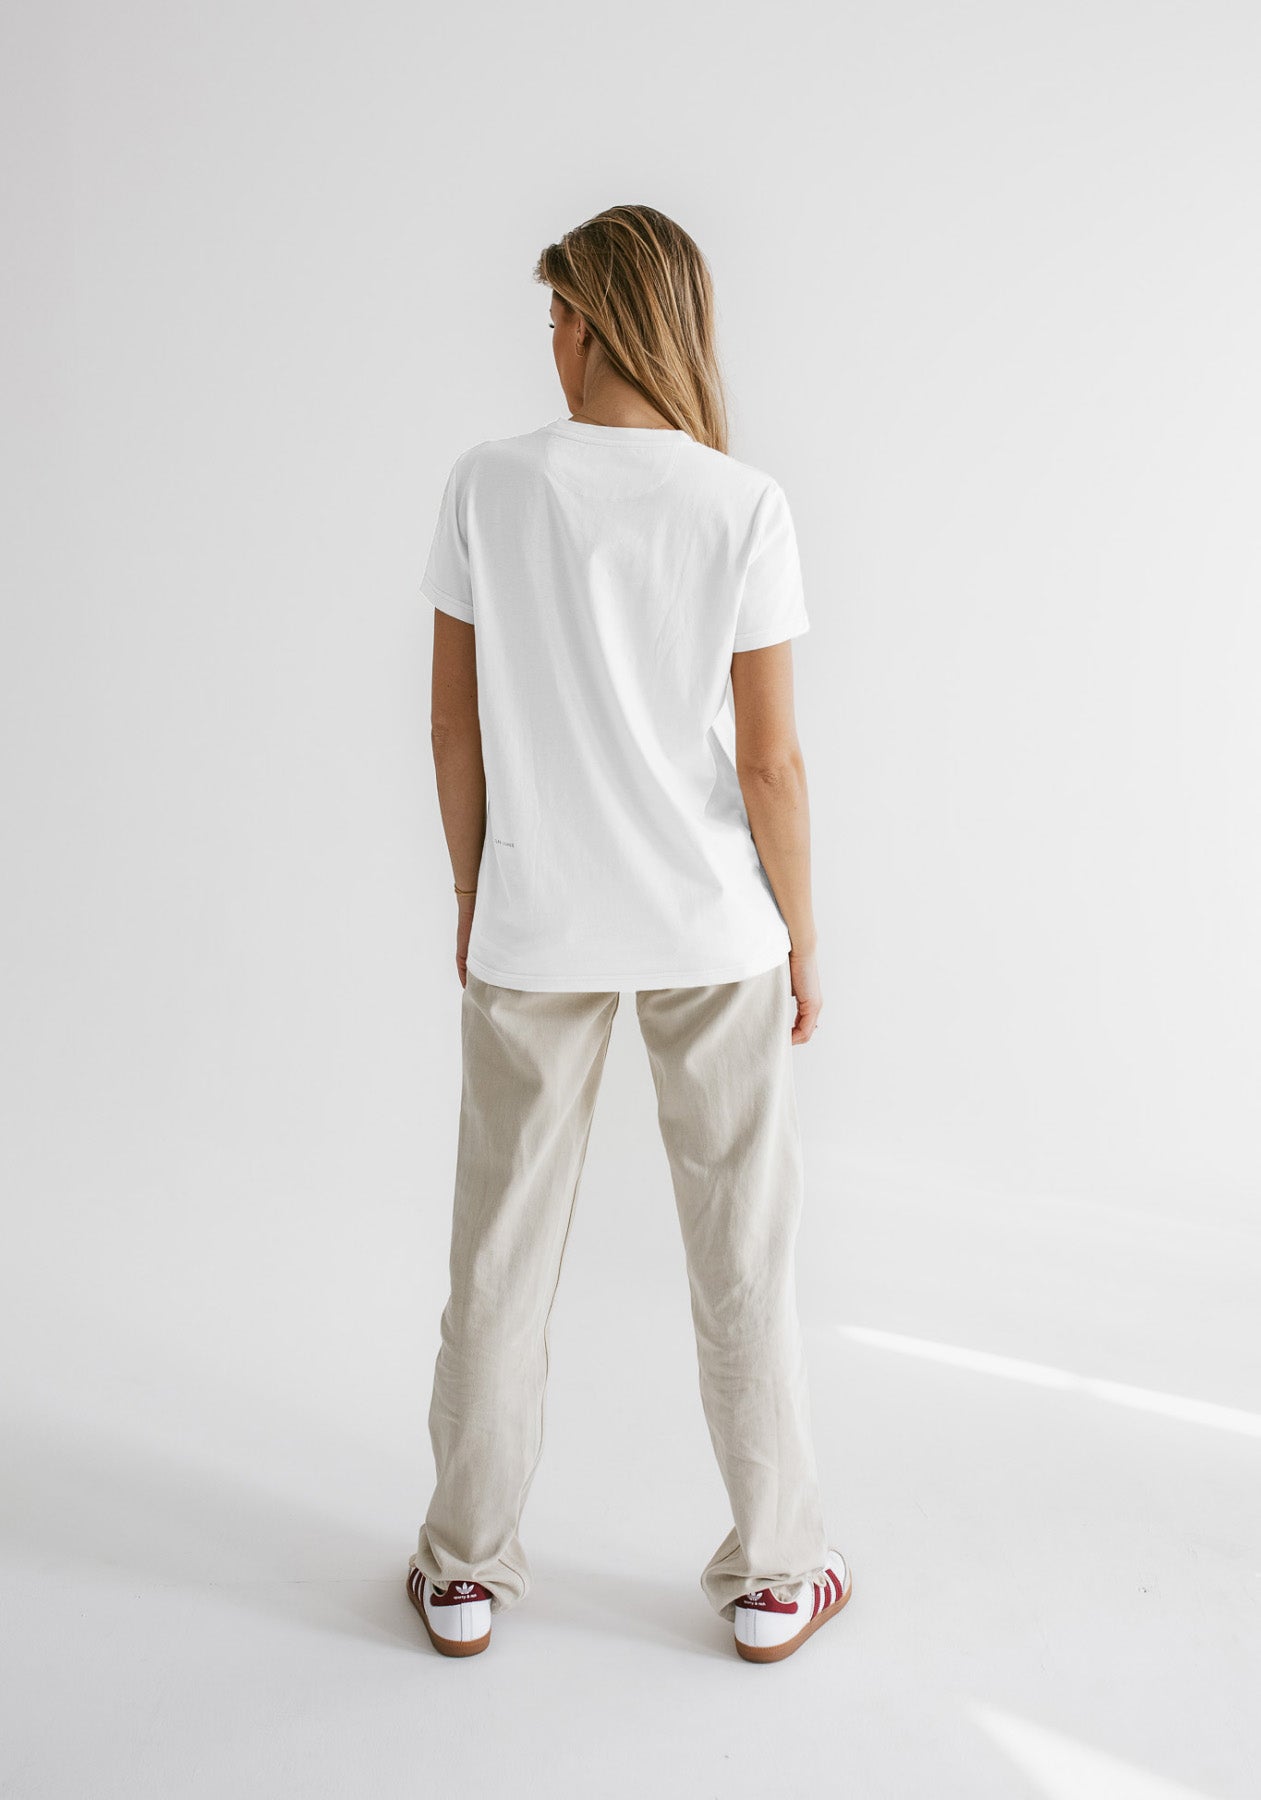 Women koszulka z bawełny organicznej Optical white - ethically made Minimalist - regular